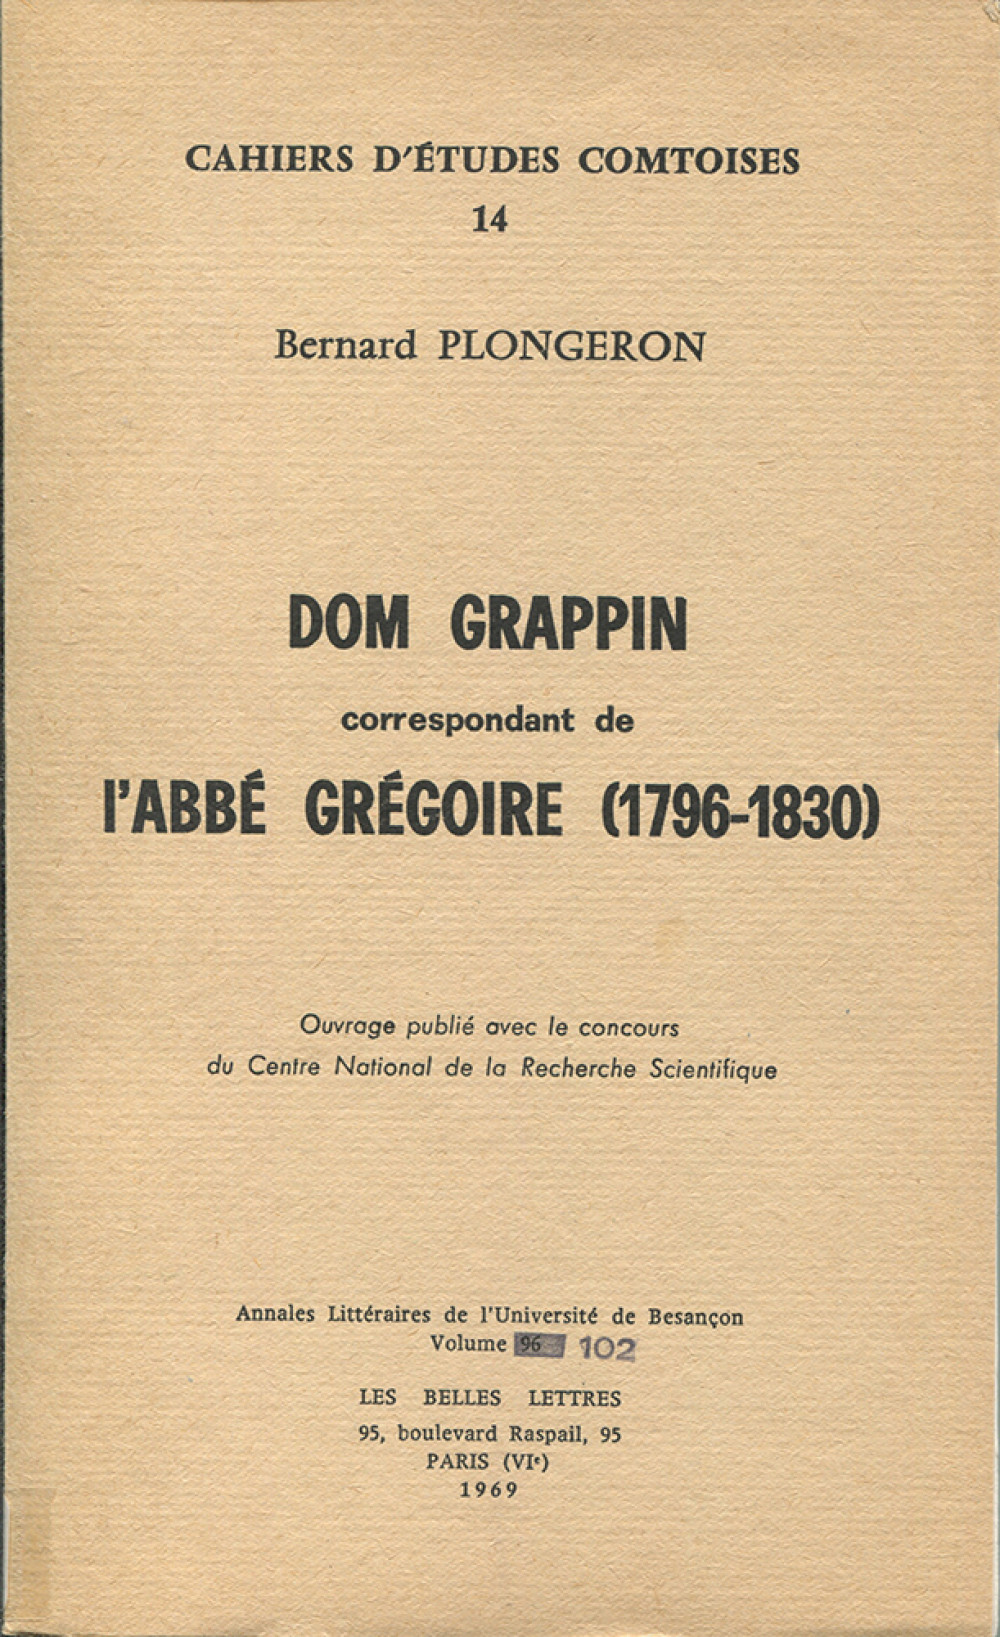 Dom Grappin correspondant de l'abbé Grégoire (1796-1830)